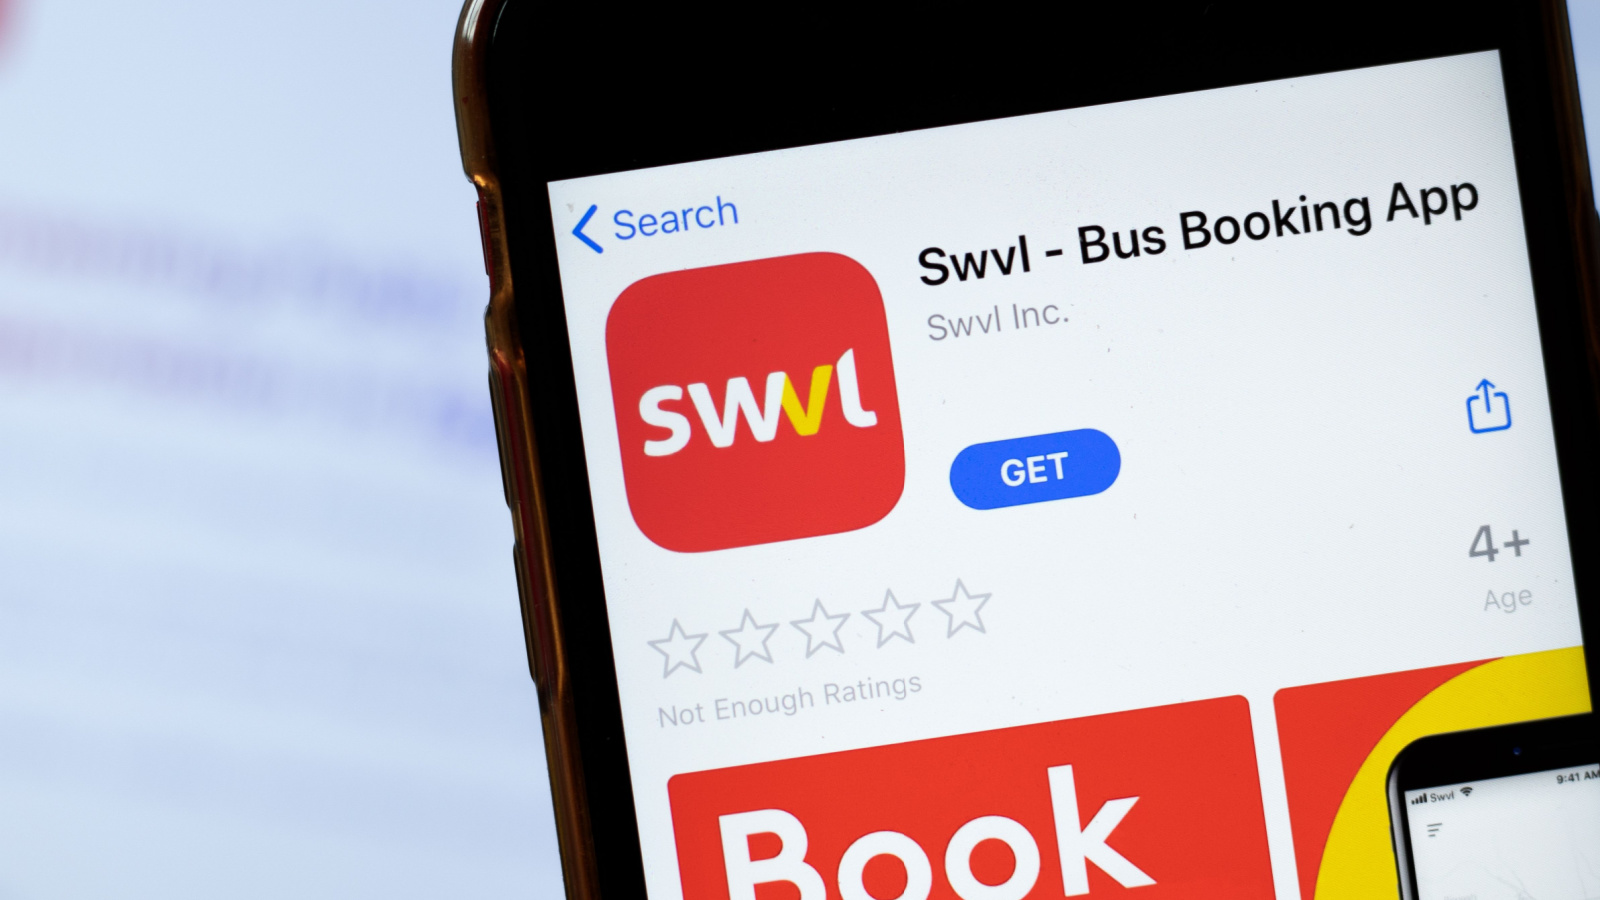 Swvl (SWVL) app displayed in App Store on smartphone